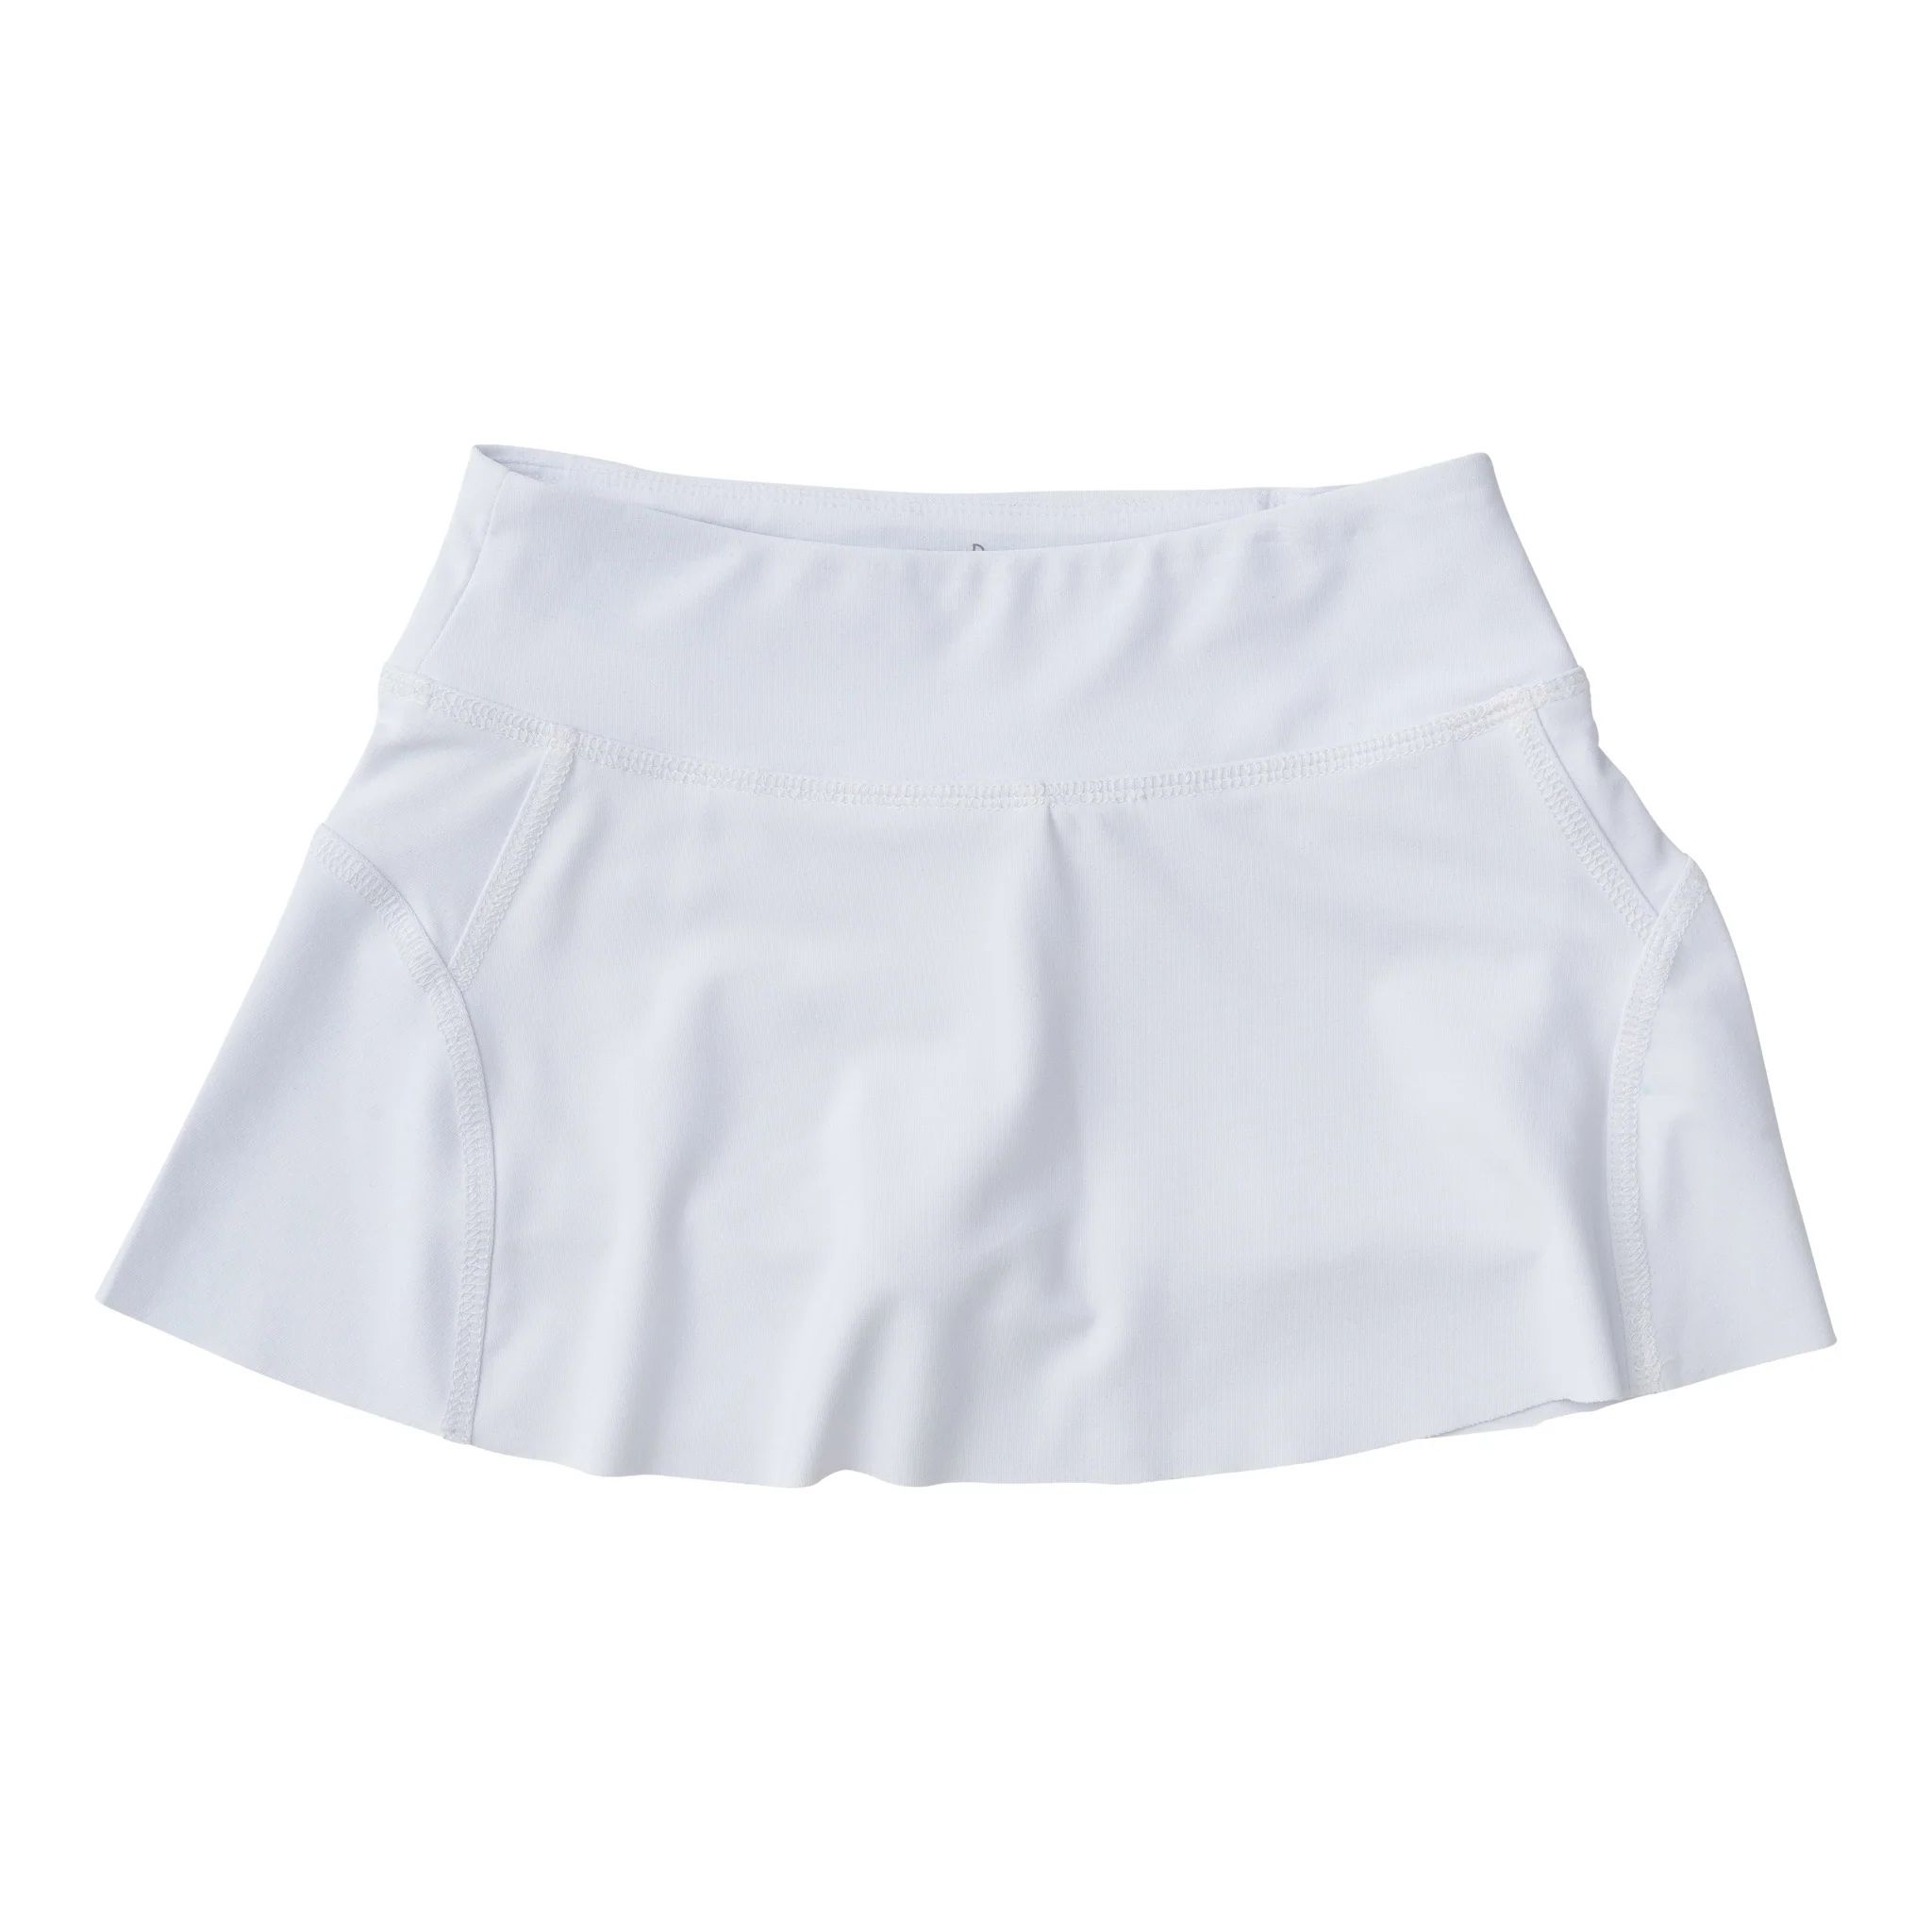 Tennis Twirl Skort in Bright White | PRODOH